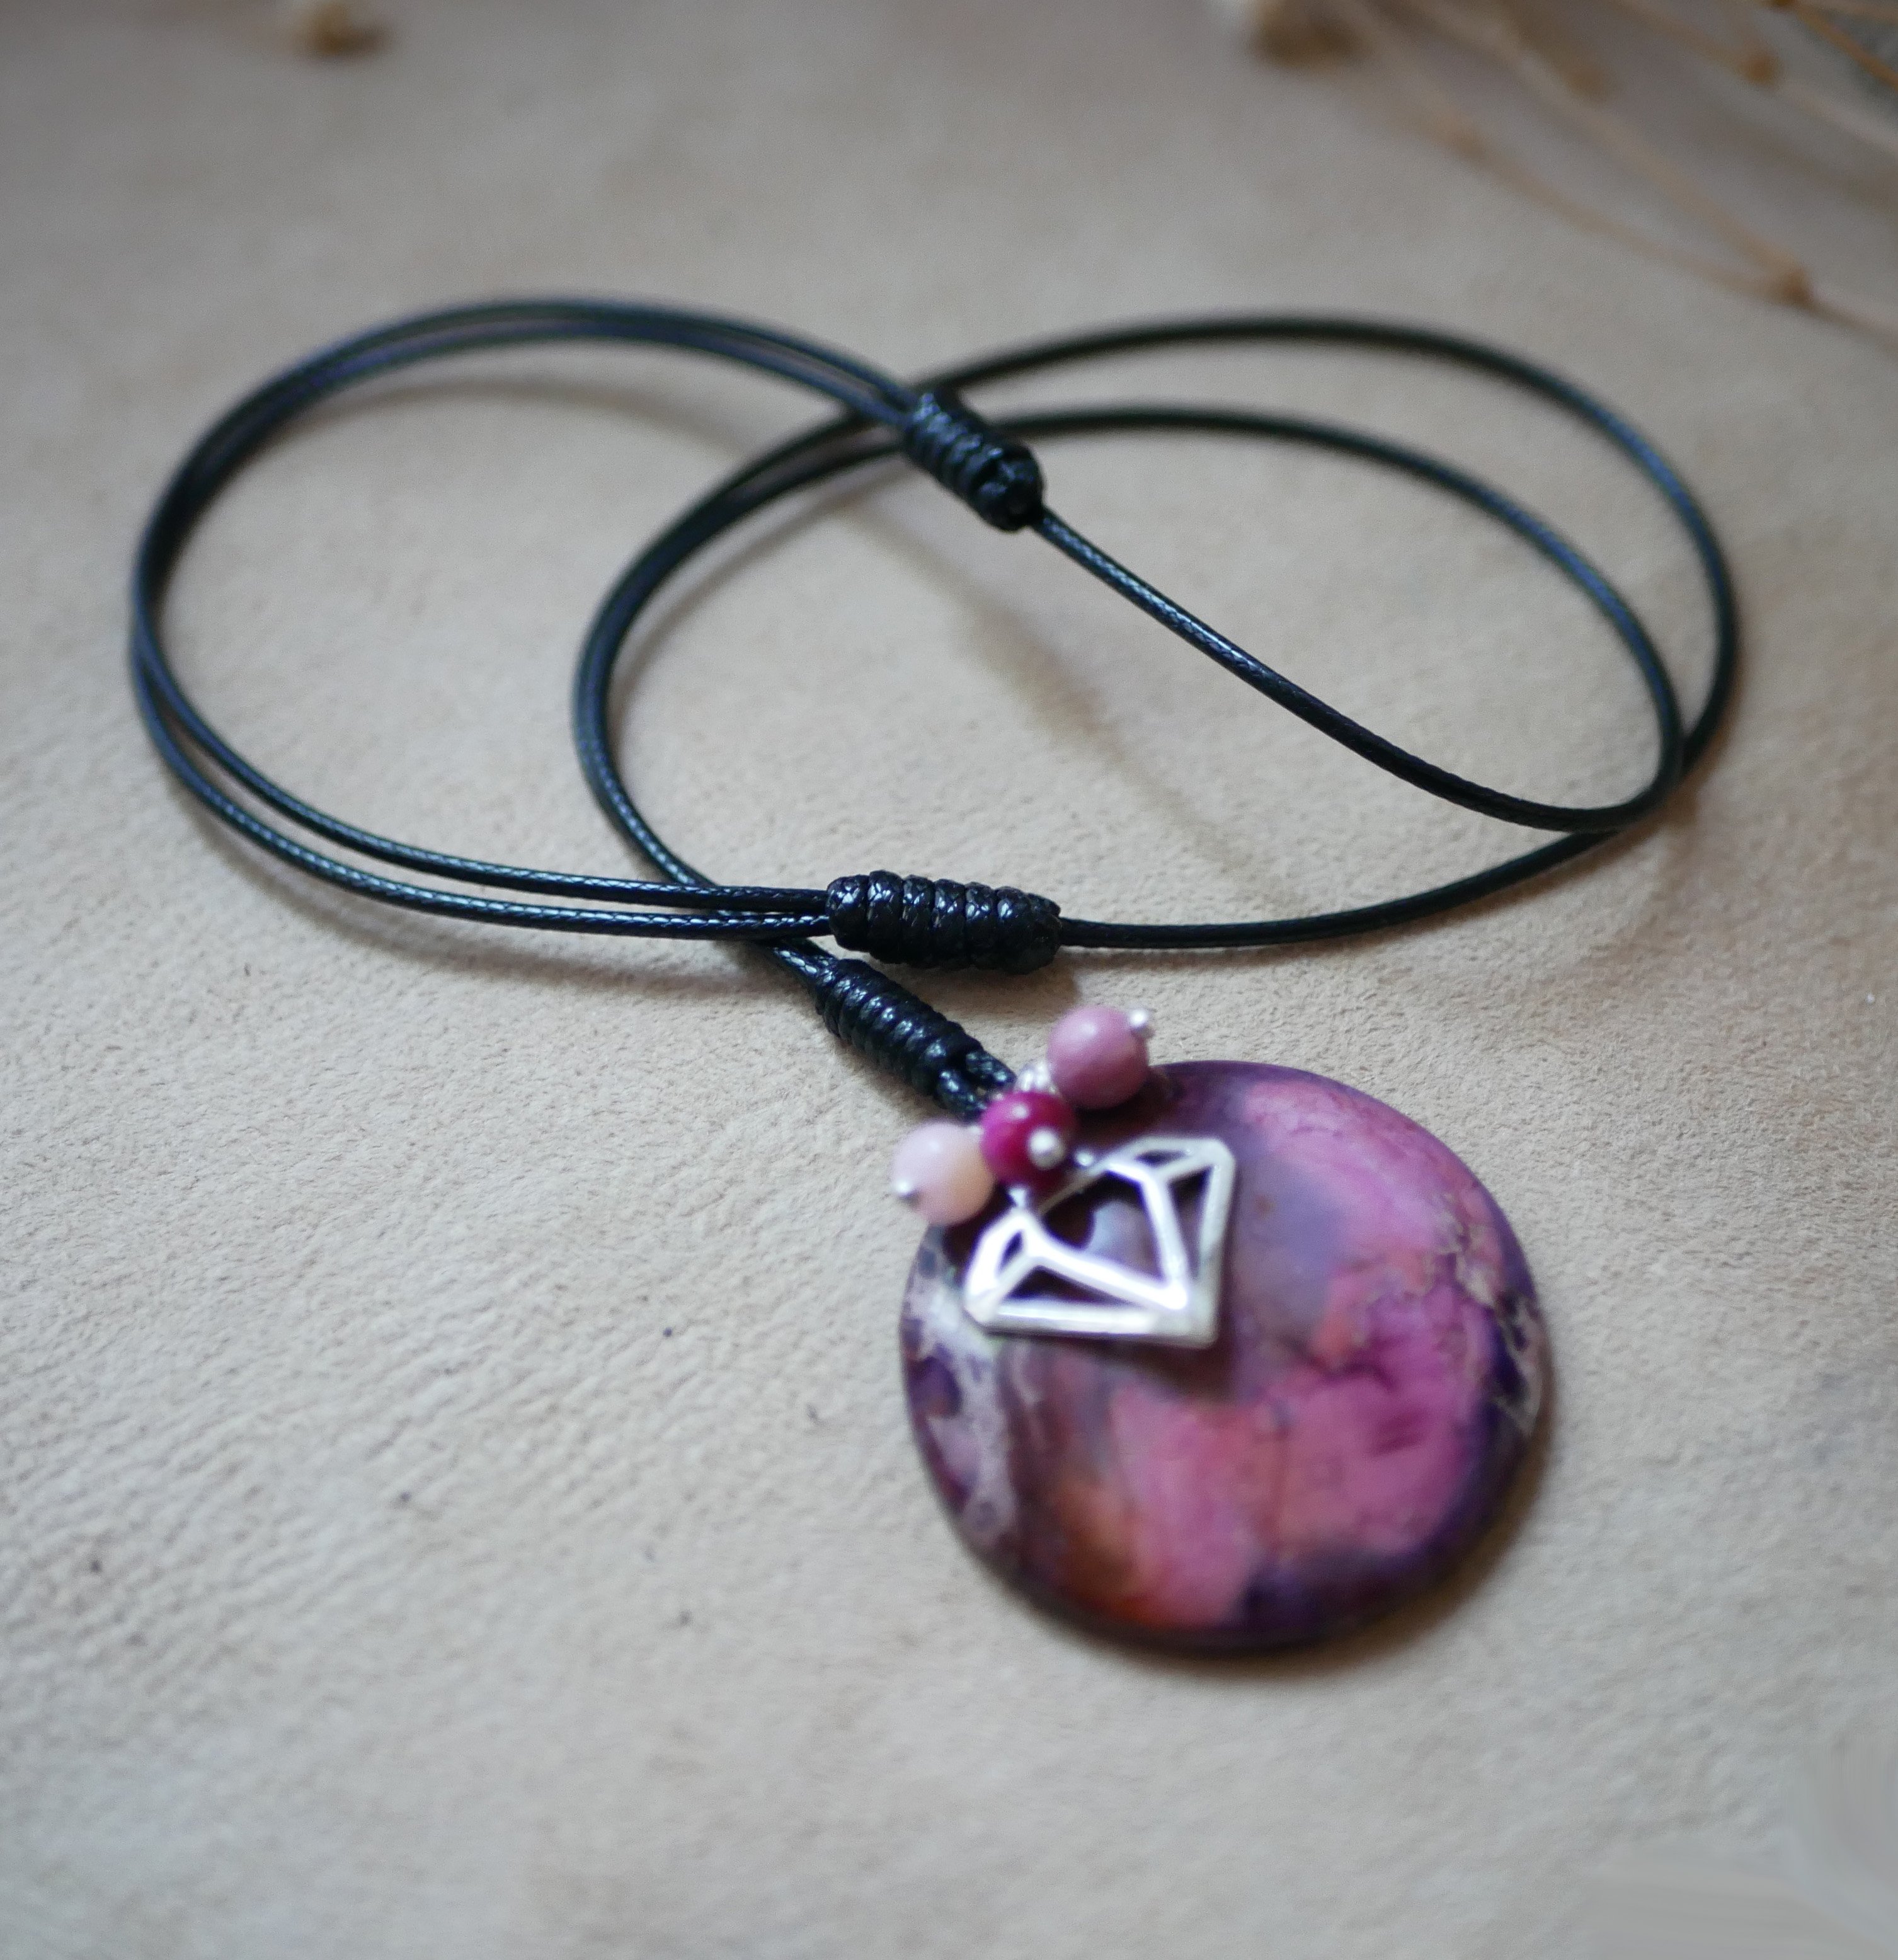 Collier pendentif rond en pierre de jaspe violet sur cordon cuir noir ajustable